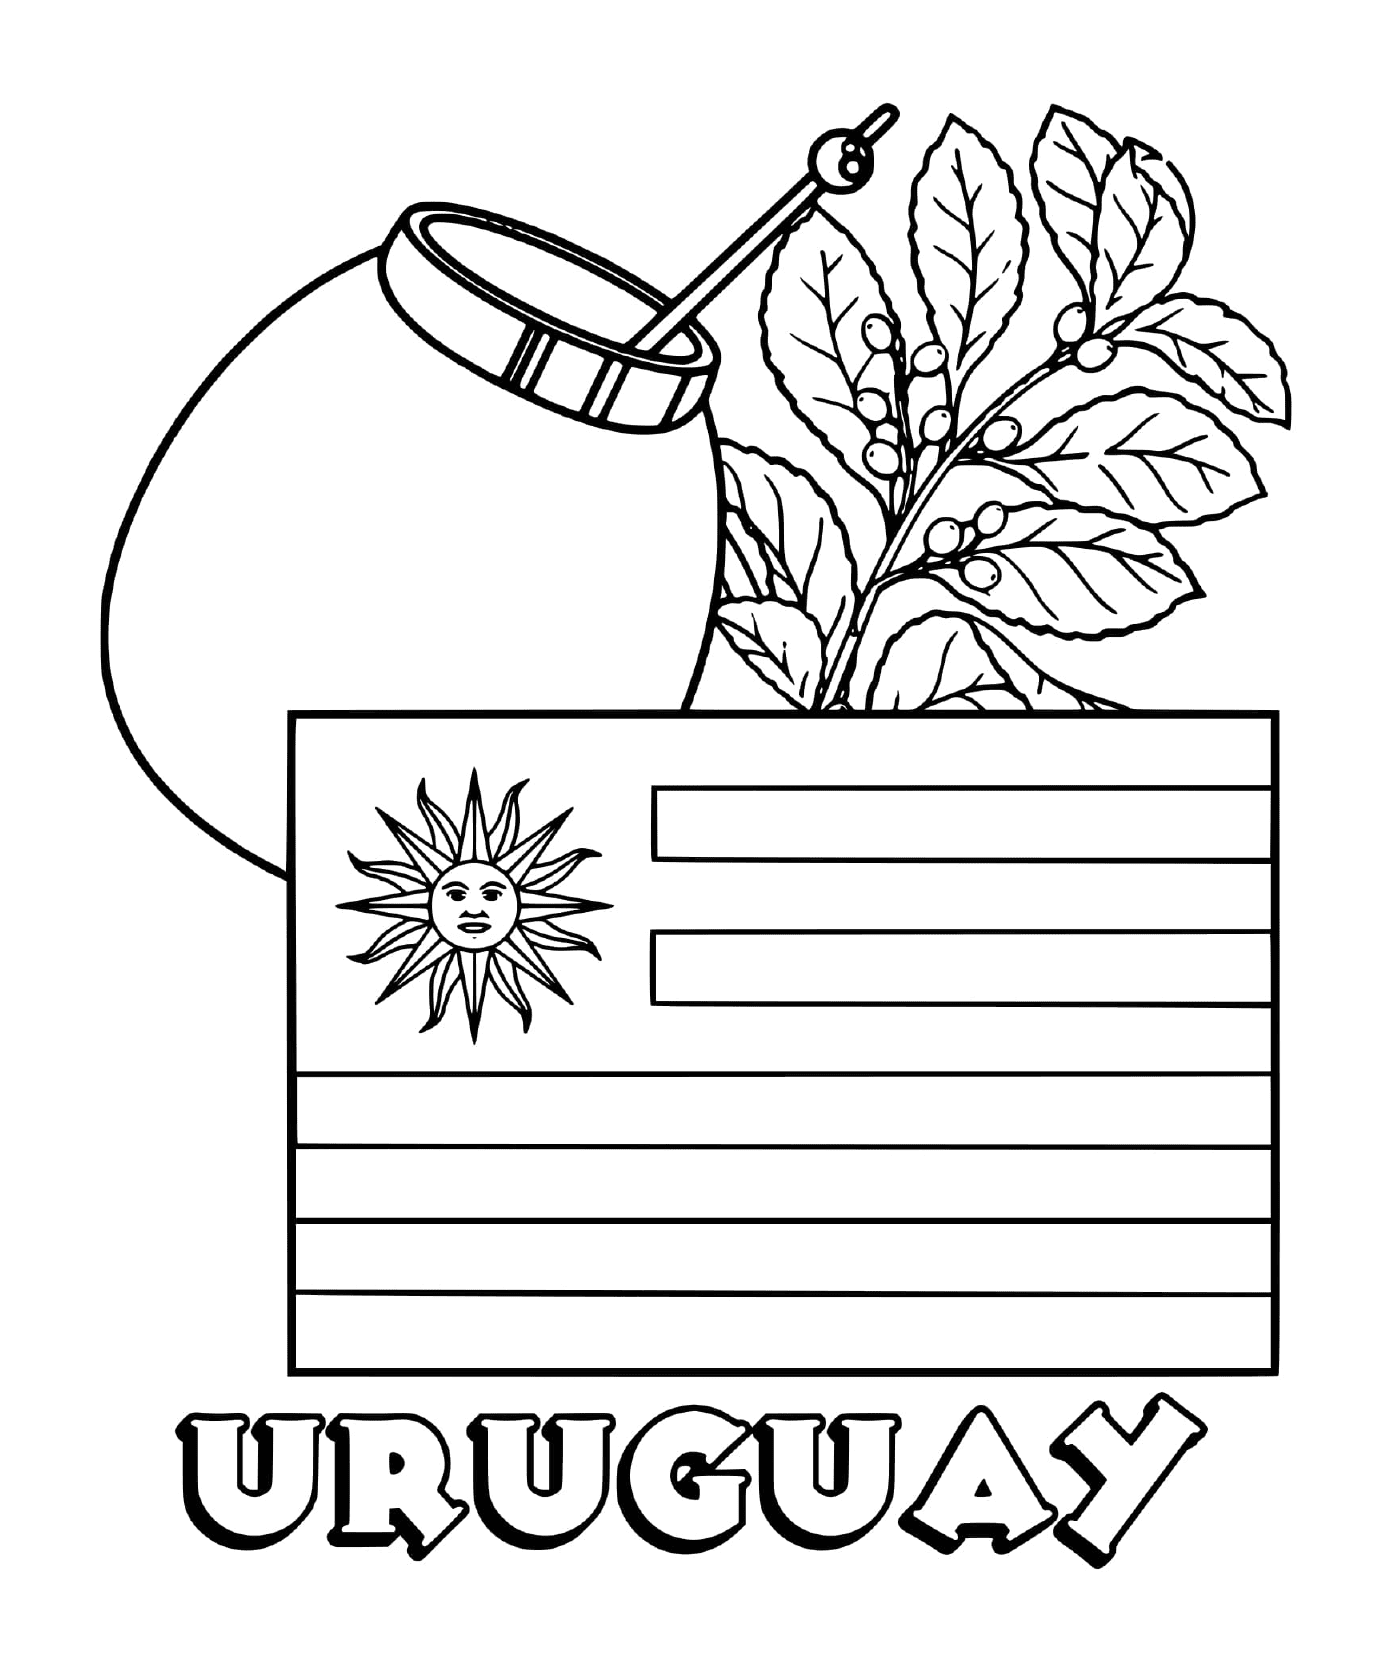   Drapeau d'Uruguay, yerba mate 